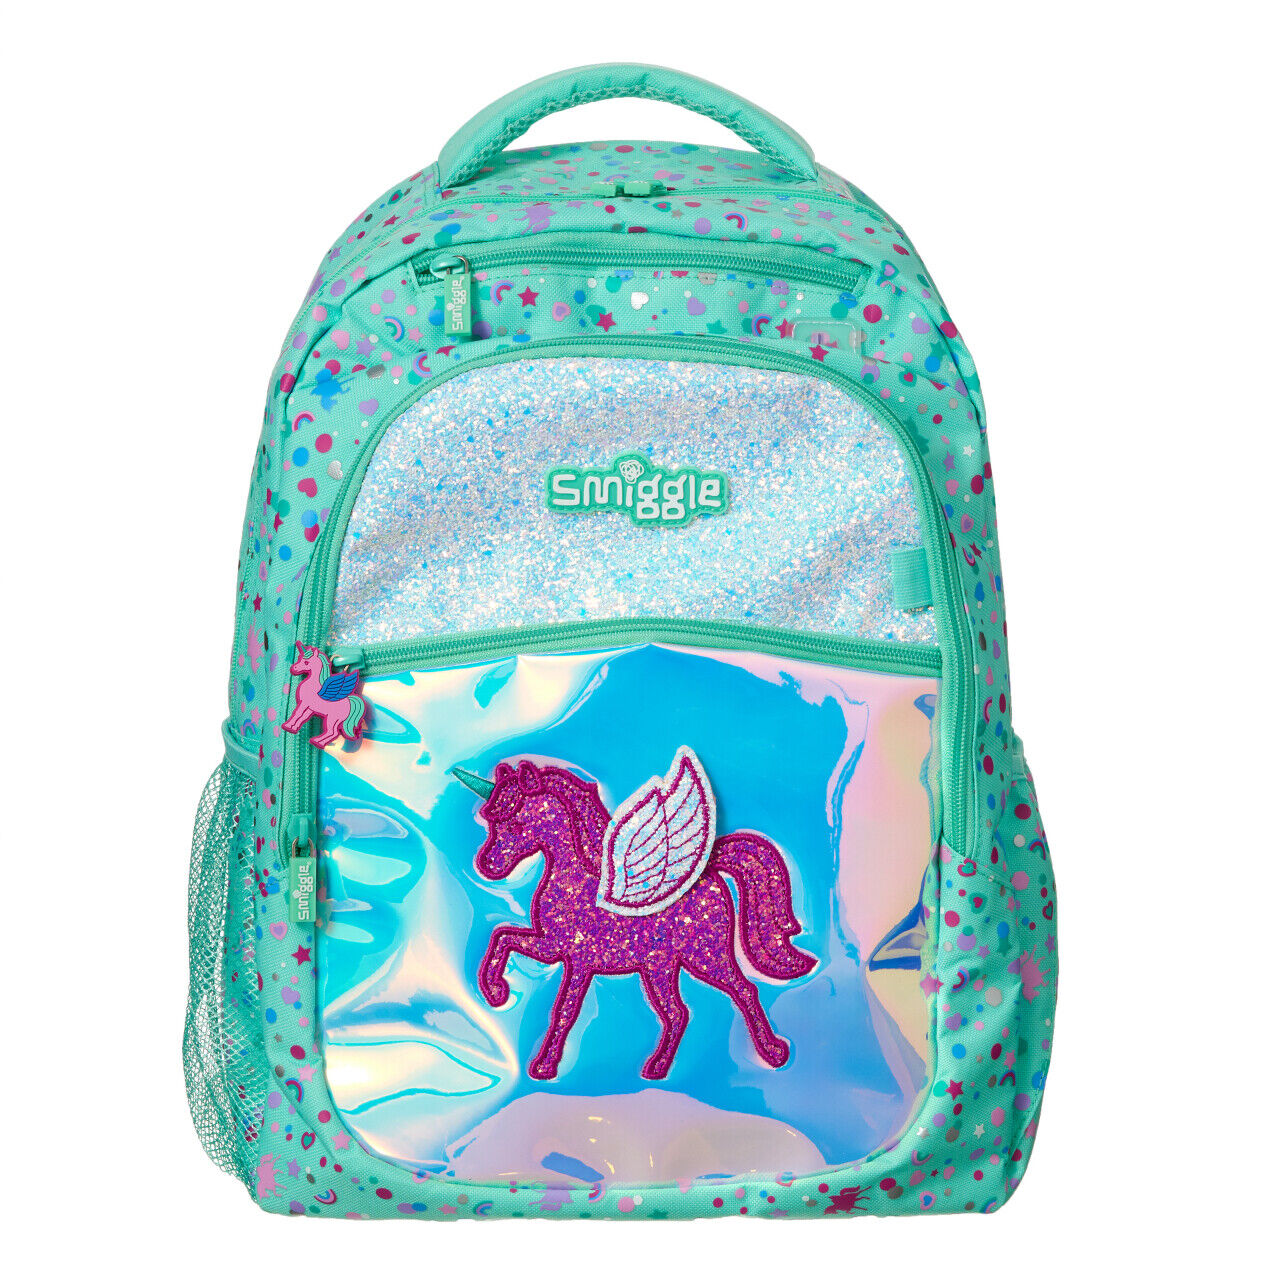 ❤ NEW Girls SMIGGLE Backpack School Bag Rucksack Fluffy Fave 